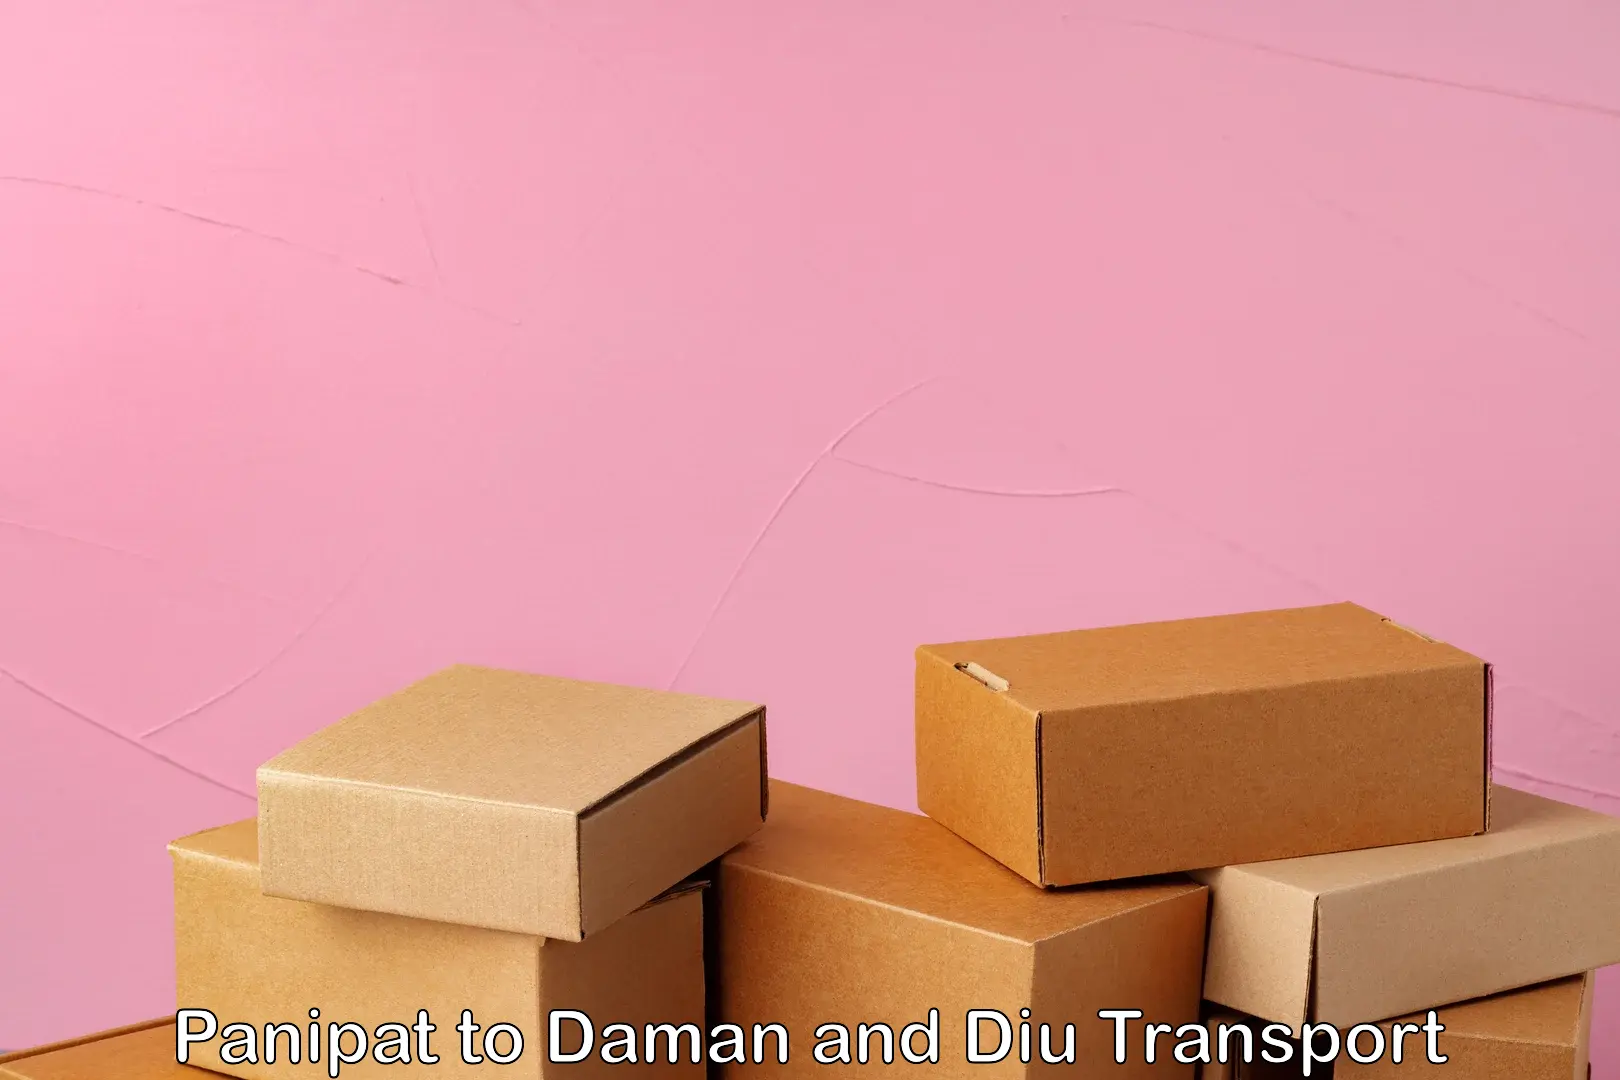 International cargo transportation services Panipat to Daman and Diu